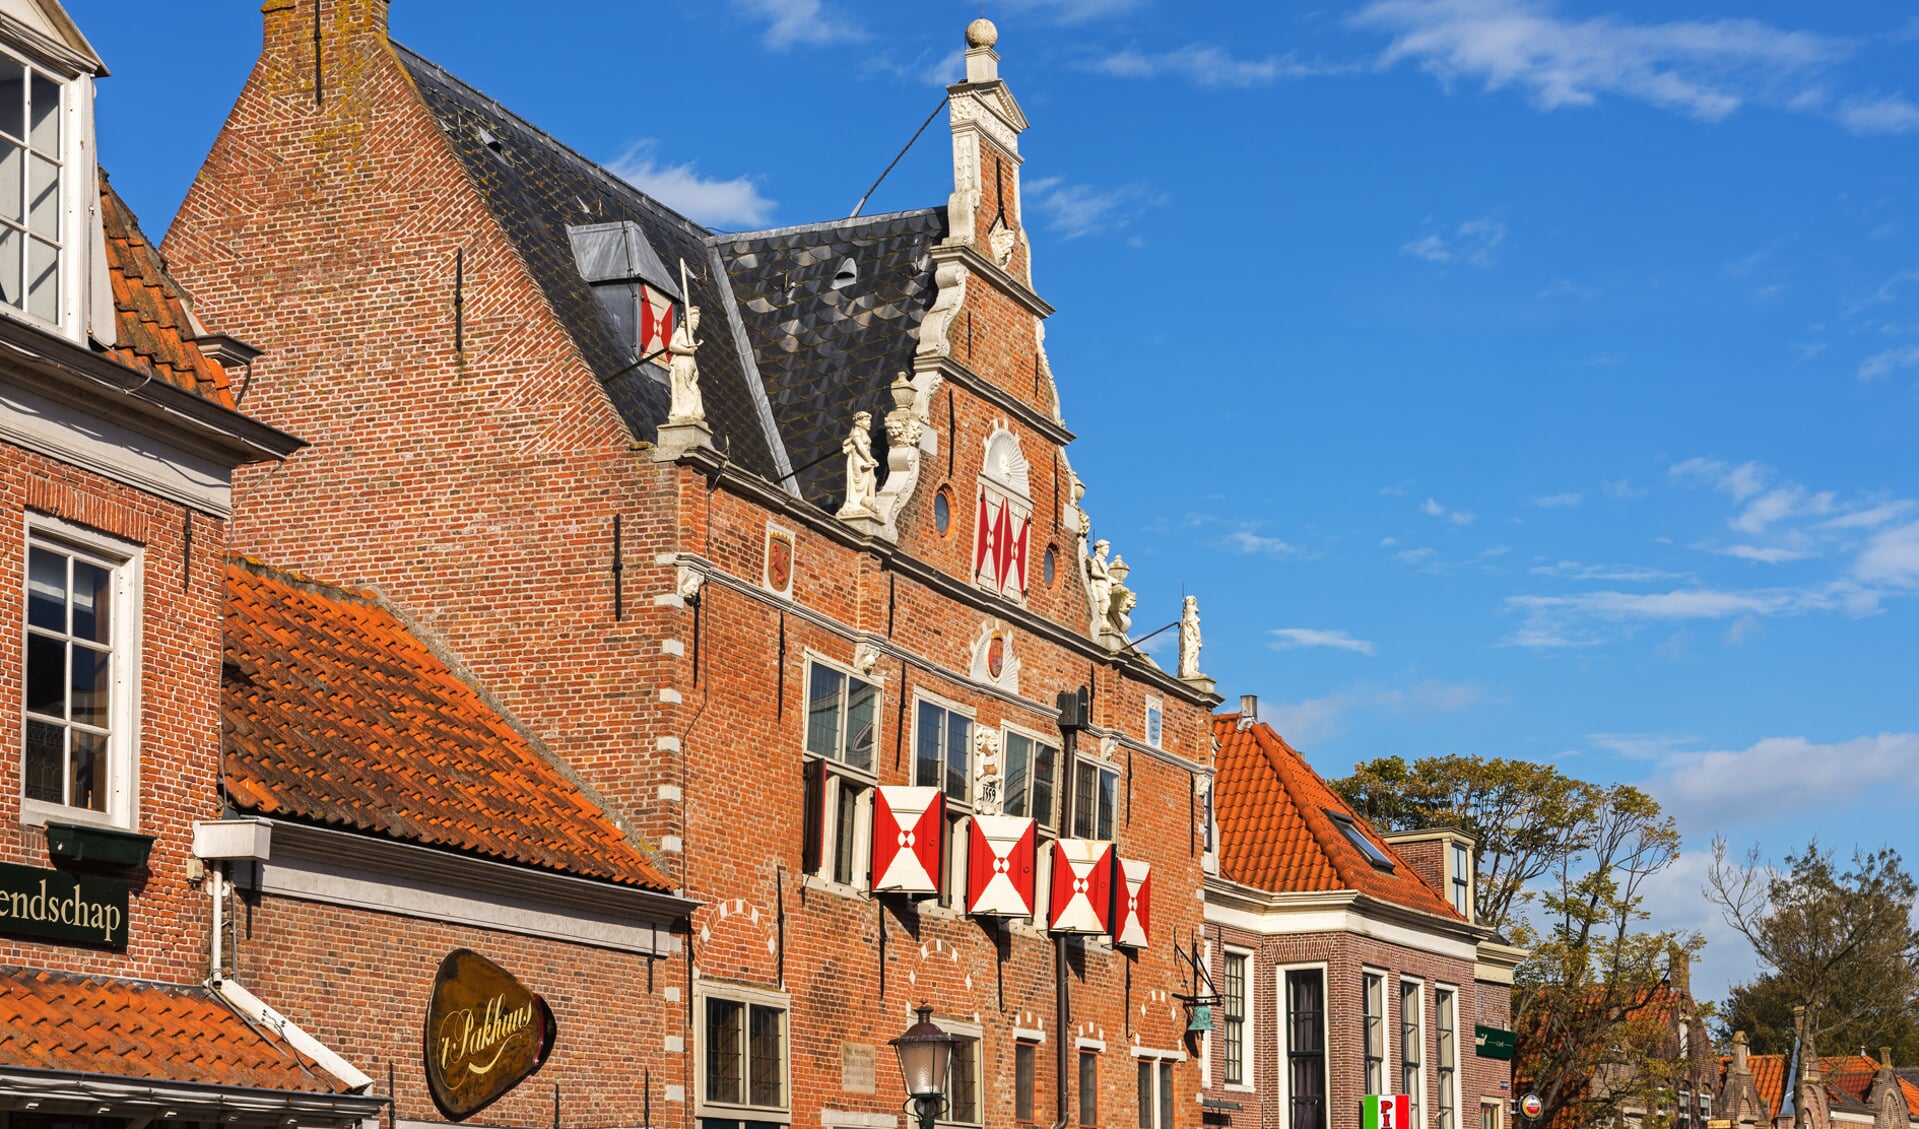 Historische vereniging Oud Enkhuizen gaat verhuizen naar een nieuw pand: het Waaggebouw aan de Kaasmarkt in Enkhuizen. (Foto: Shutterstock)